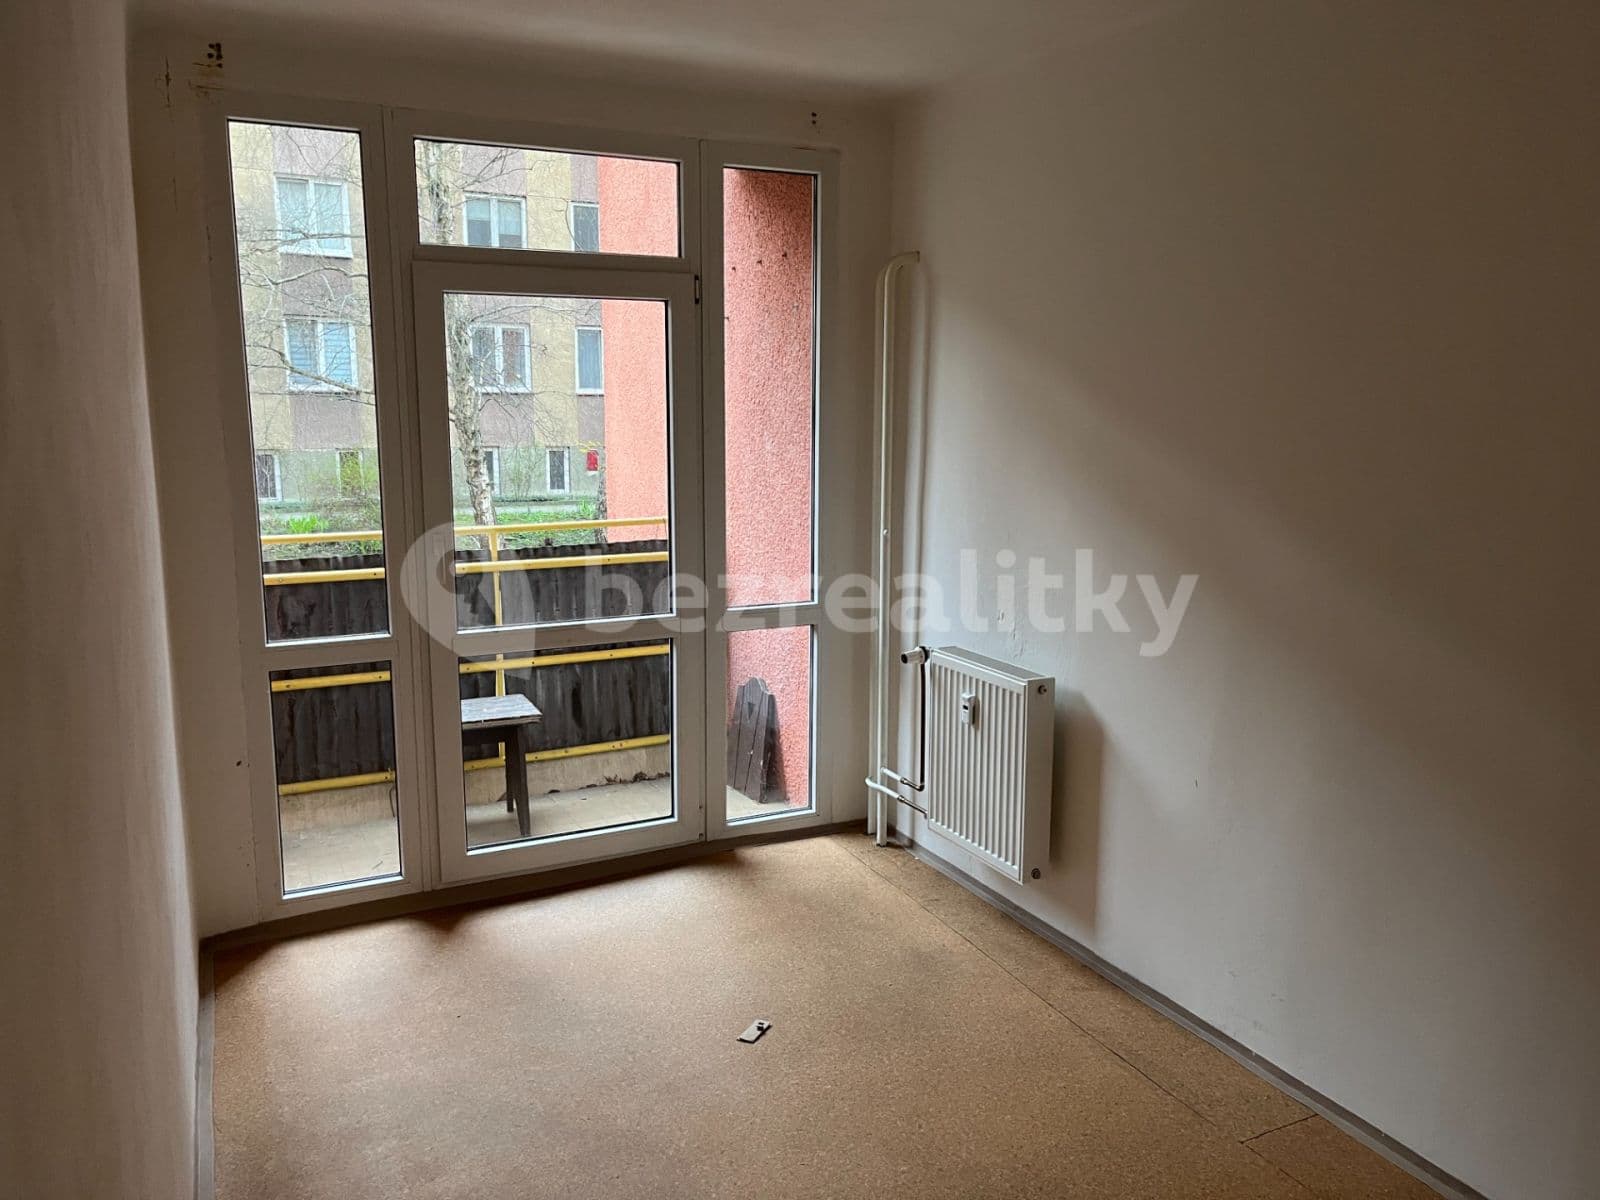 2 bedroom flat to rent, 45 m², Stránského, Litoměřice, Ústecký Region